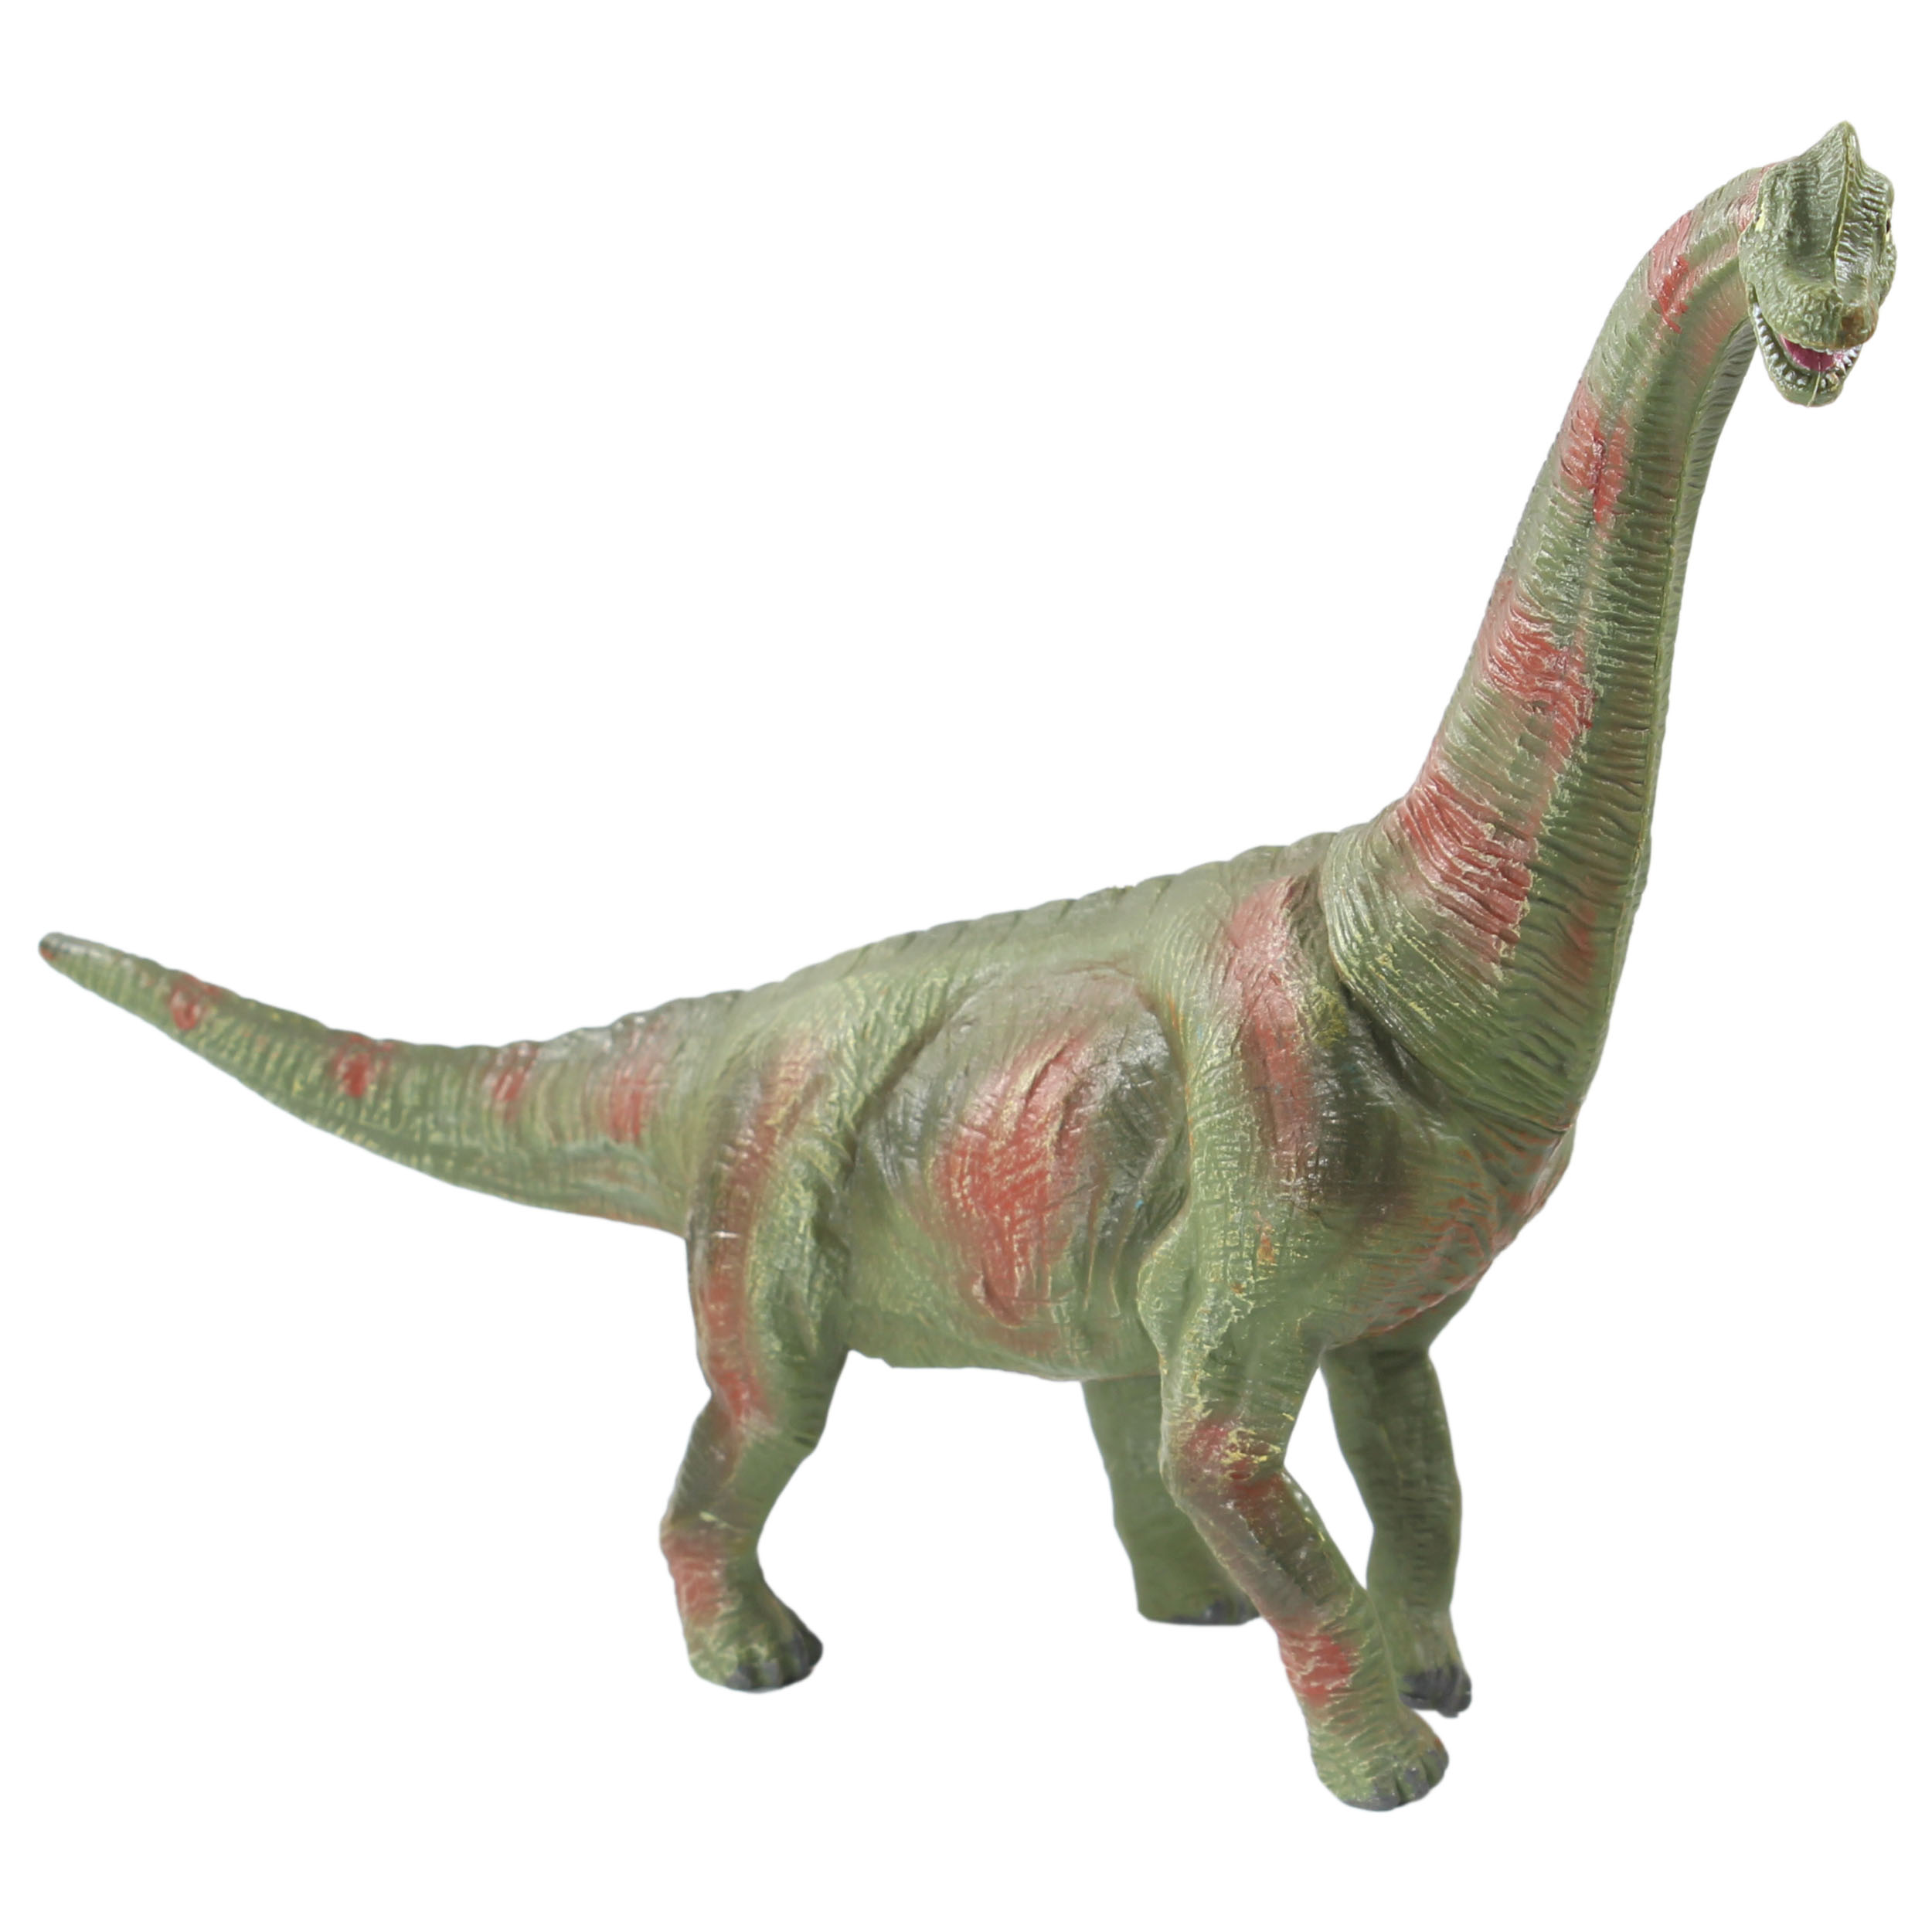 فیگور حیوانات طرح دایناسور مدل BRACHIOSAURUS کد 0020